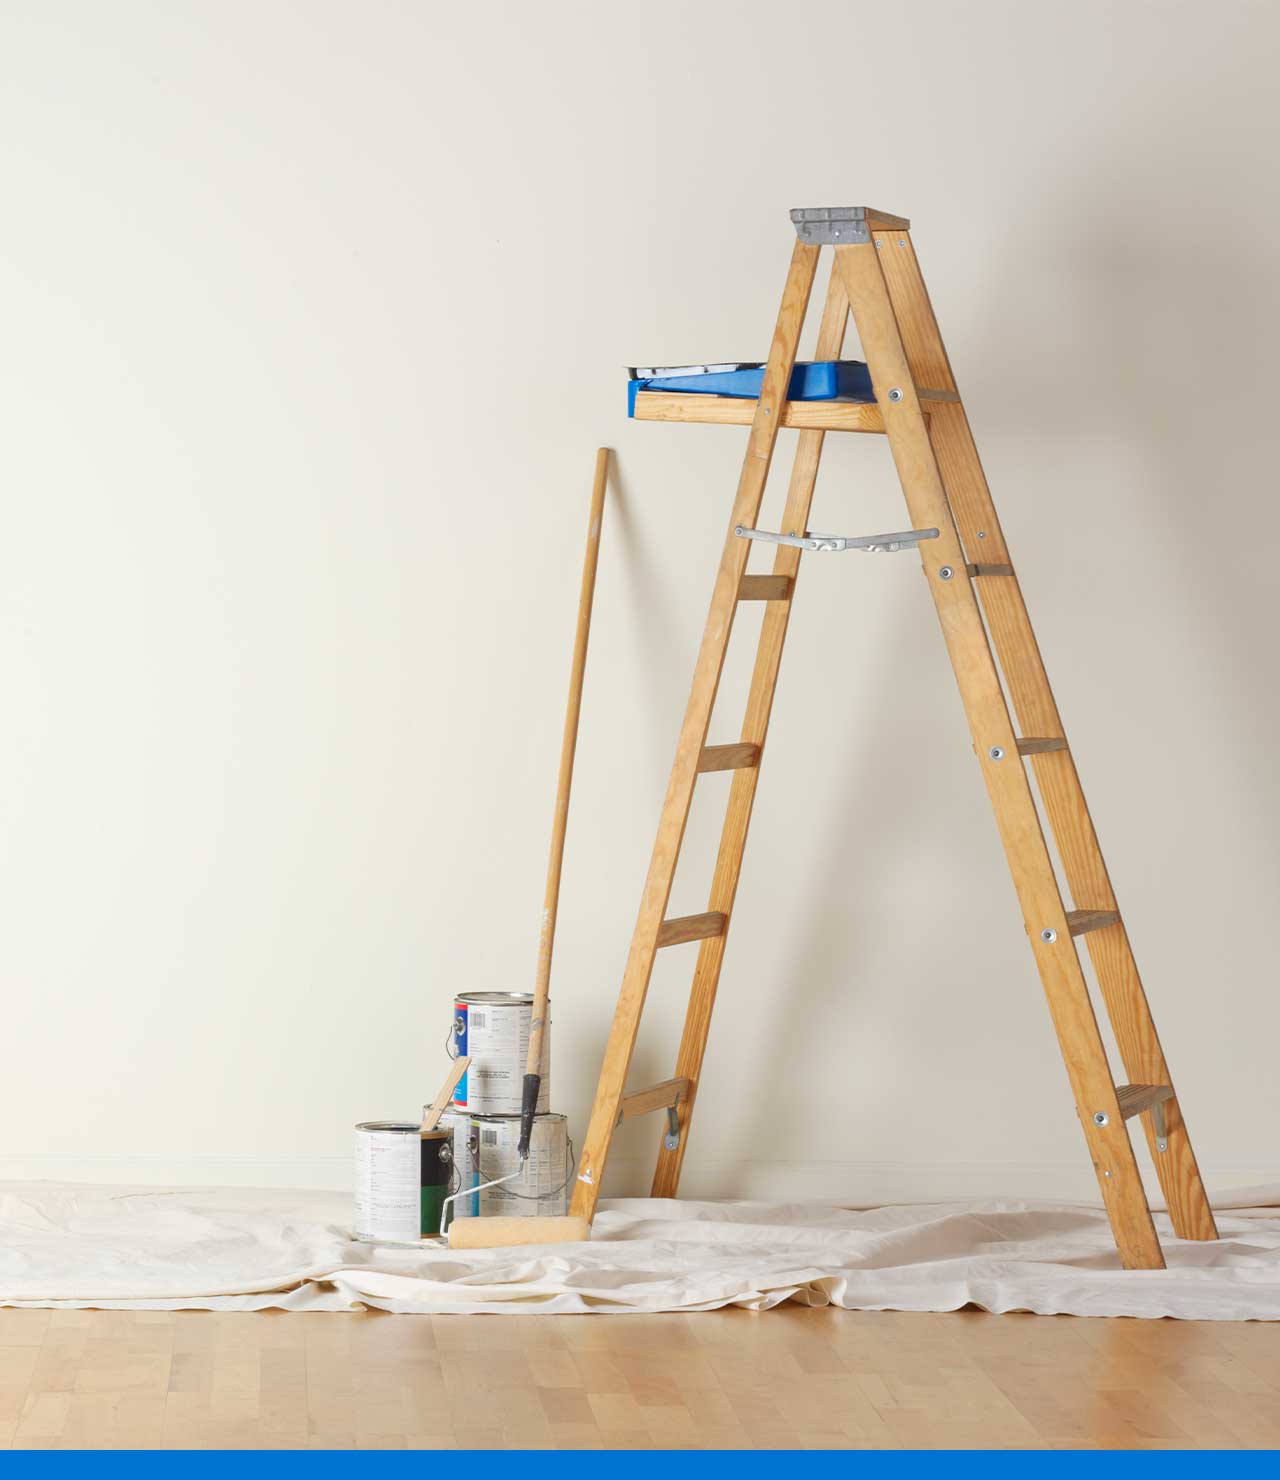  Adhesivos de película protectora de pared transparente para  cocinas y oficinas – Protege la pintura de salpicaduras de aceite, basura,  rasguños de muebles : Hogar y Cocina